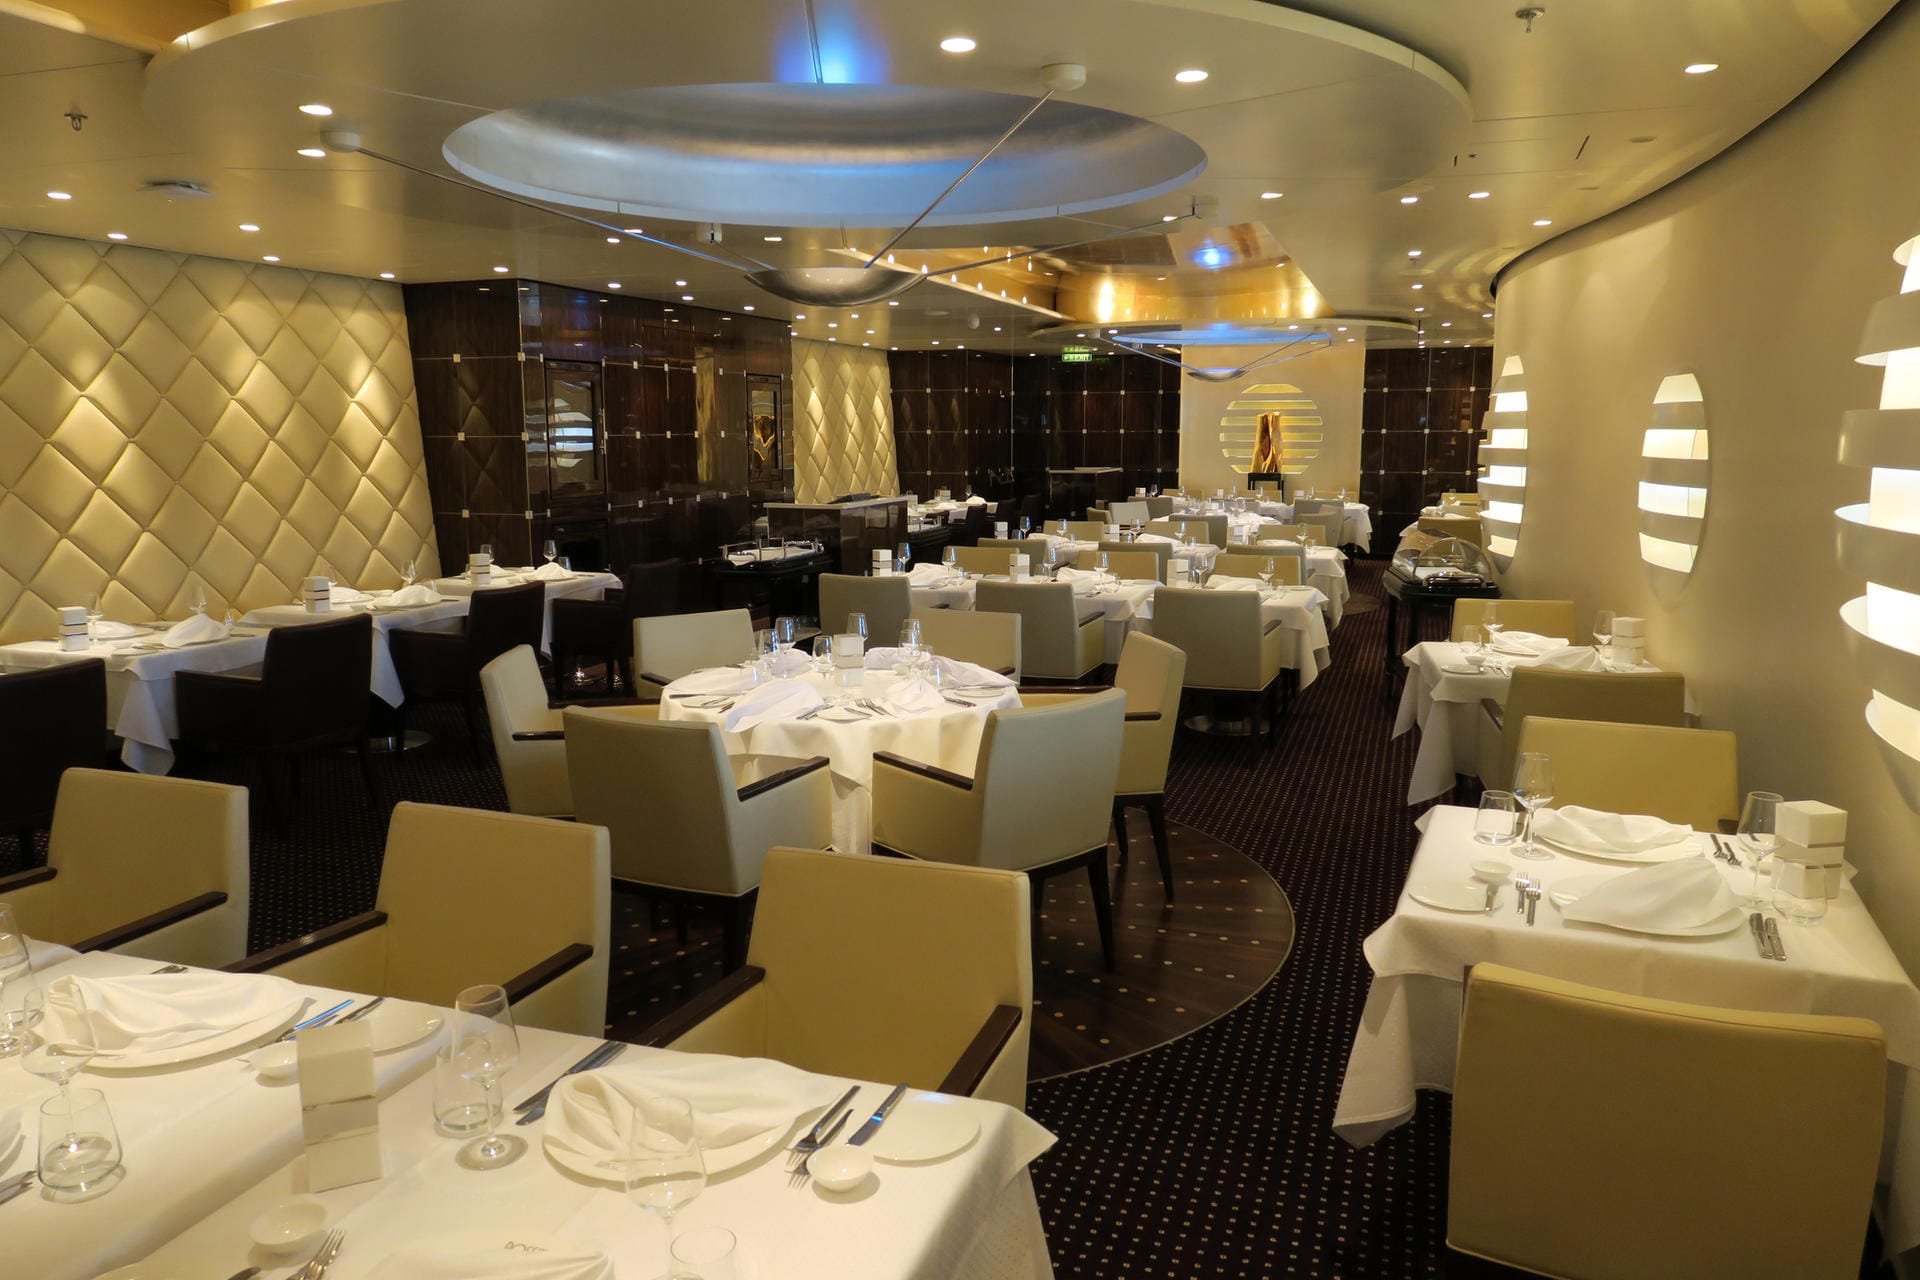 Nur wenig Veränderungen gibt es im Gourmet-Restaurant "Rossini", das Passagiere eventuell schon von anderen Aida-Schiffen kennen.